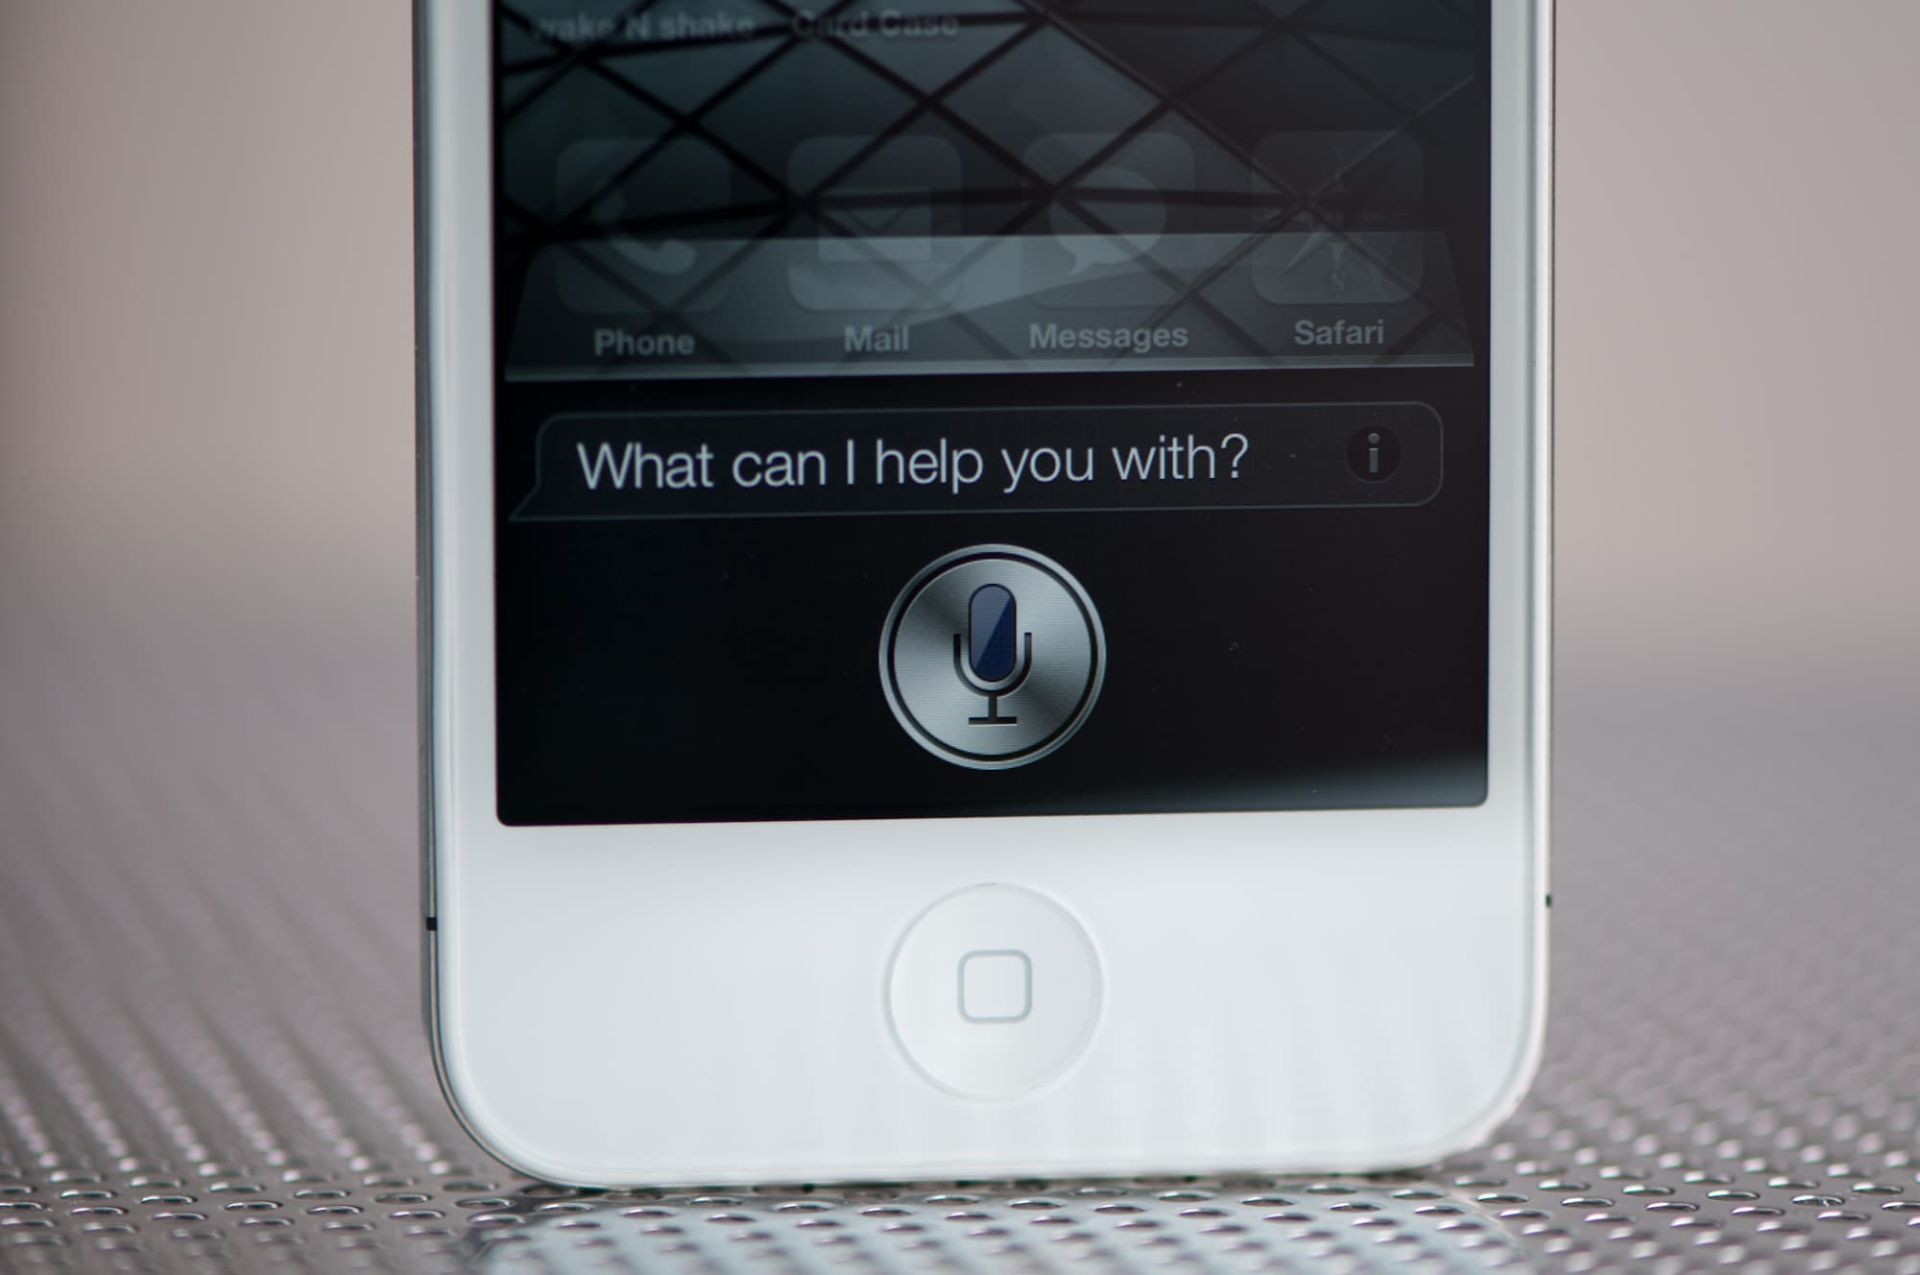 دستیار صوتی سیری Siri آیفون 4s